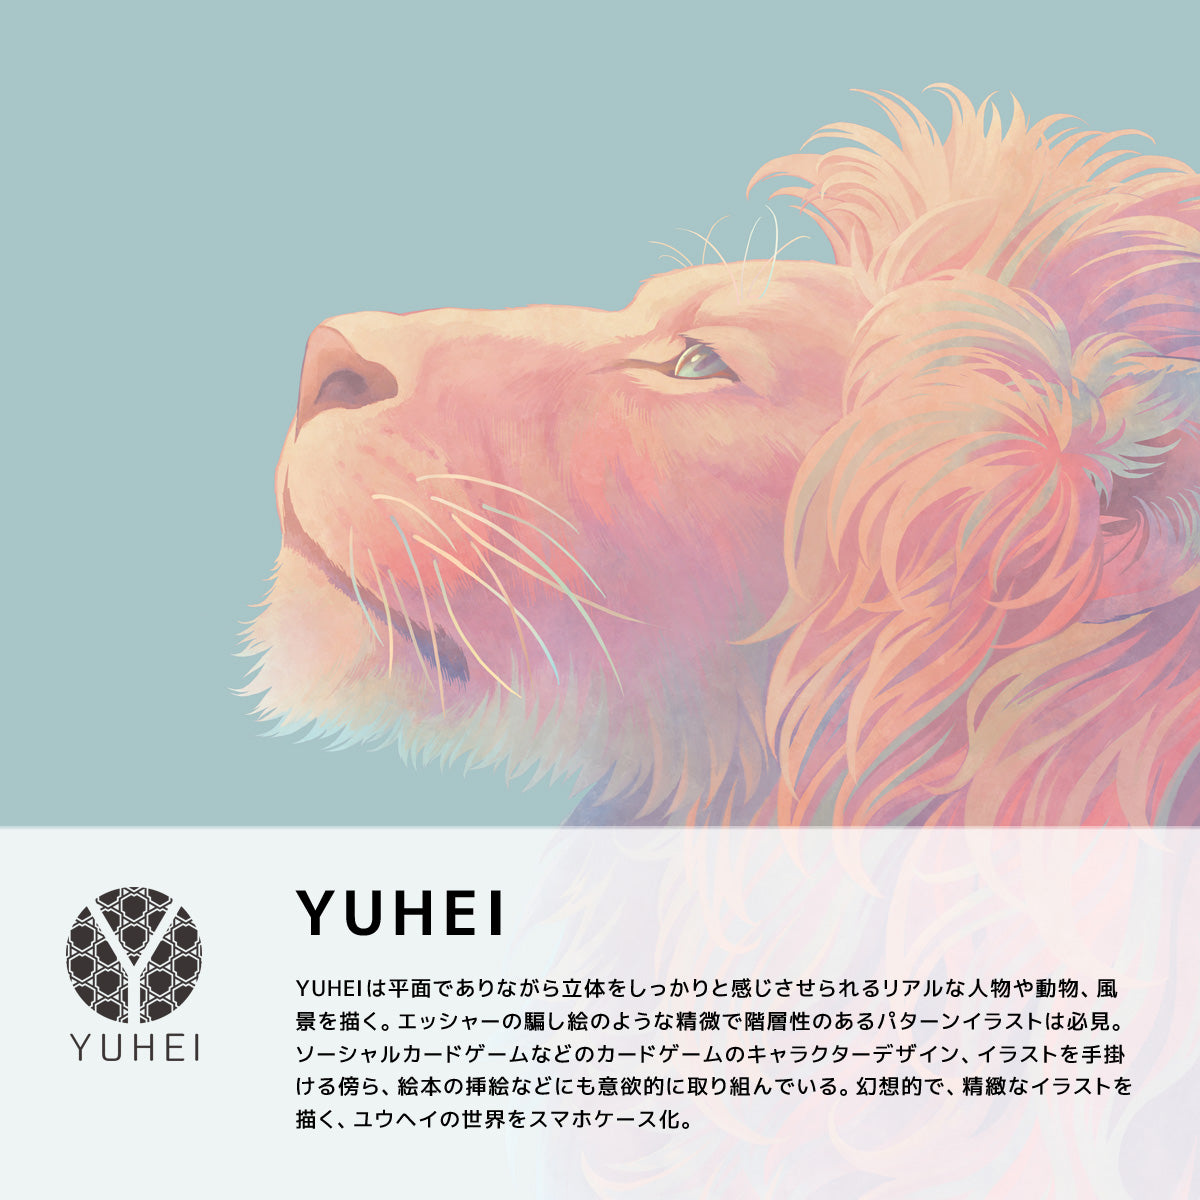 YUHEIは、平面でありながら立体をしっかりと感じさせられるリアルな人物や動物、風景を描くブランドです。